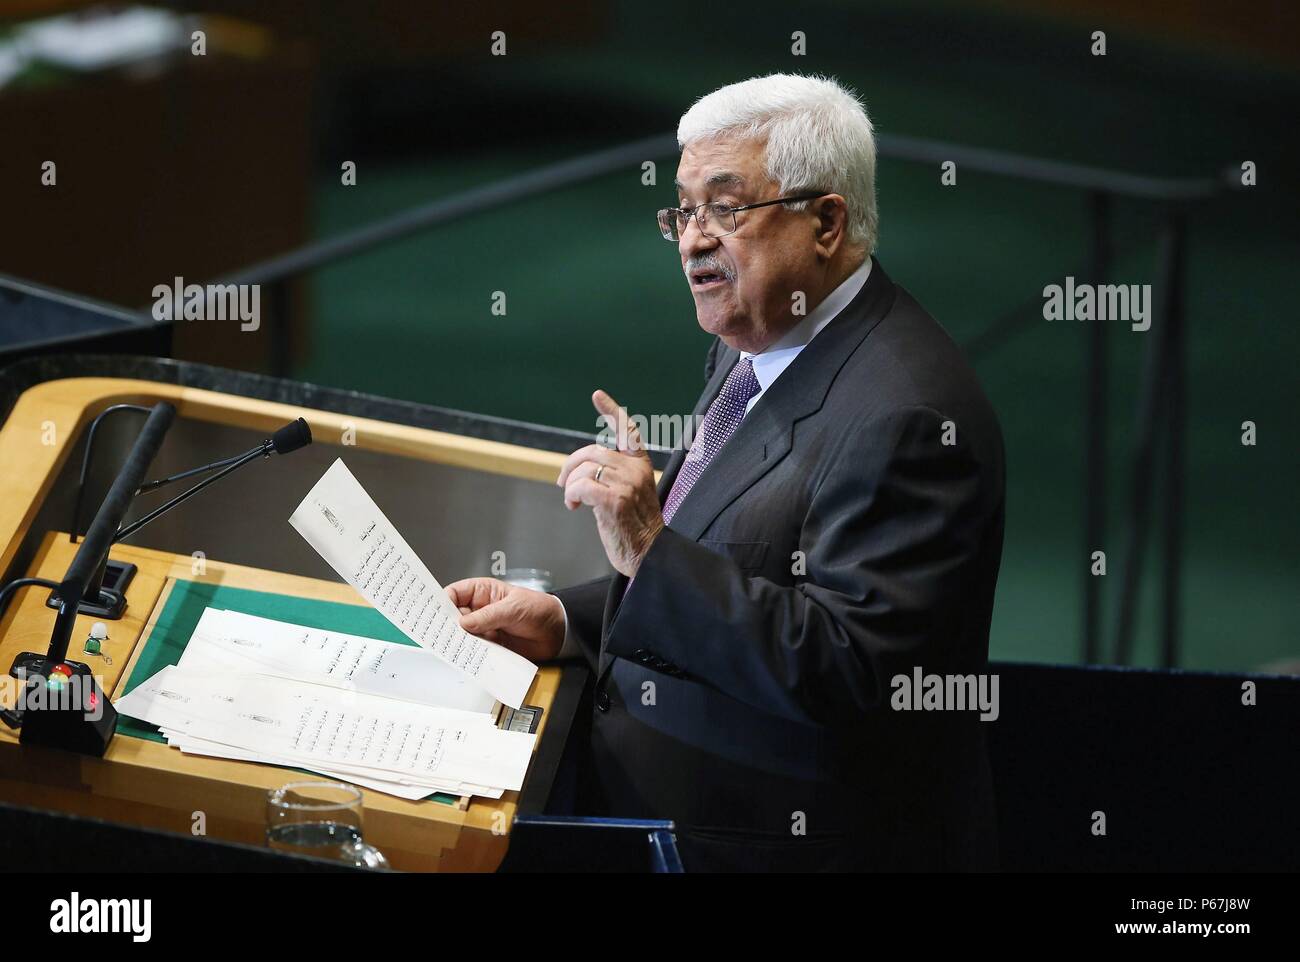 Mahmoud Abbas à l'Assemblée générale de l2012. Mahmoud Abbas né 26 mars 1935 est un homme d'État palestinien. Il a été le président de l'Organisation de libération de la Palestine (OLP) depuis le 11 novembre 2004 et a été président de l'État de Palestine depuis le 15 janvier 2005. Banque D'Images